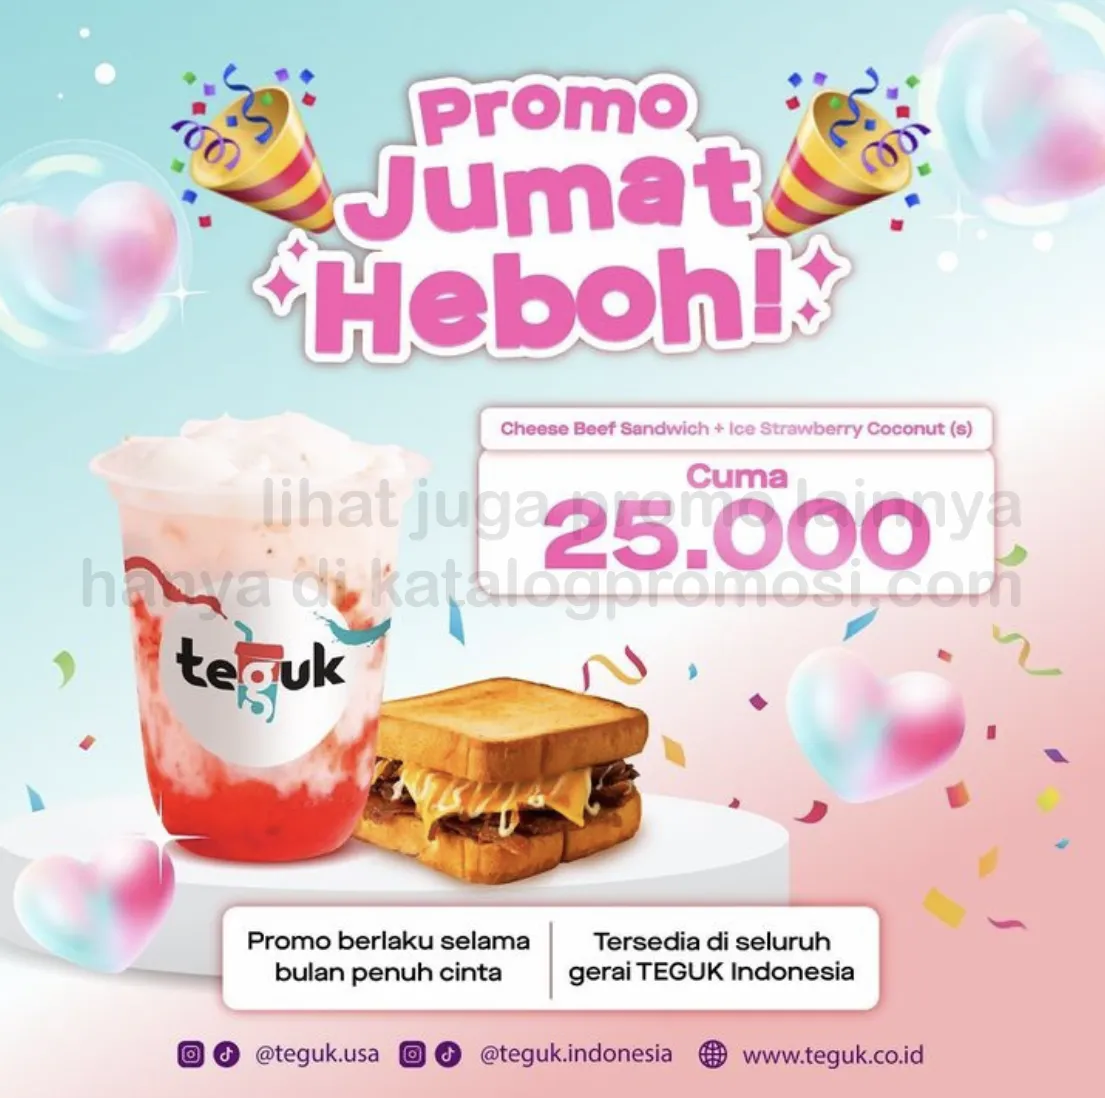 Promo TEGUK JUMAT HEBOH - Harga Spesial untuk Menu 1 Ice Strawberry Coconut (Small) + 1 Cheesy Beef Sandwich cuma Rp. 25.000